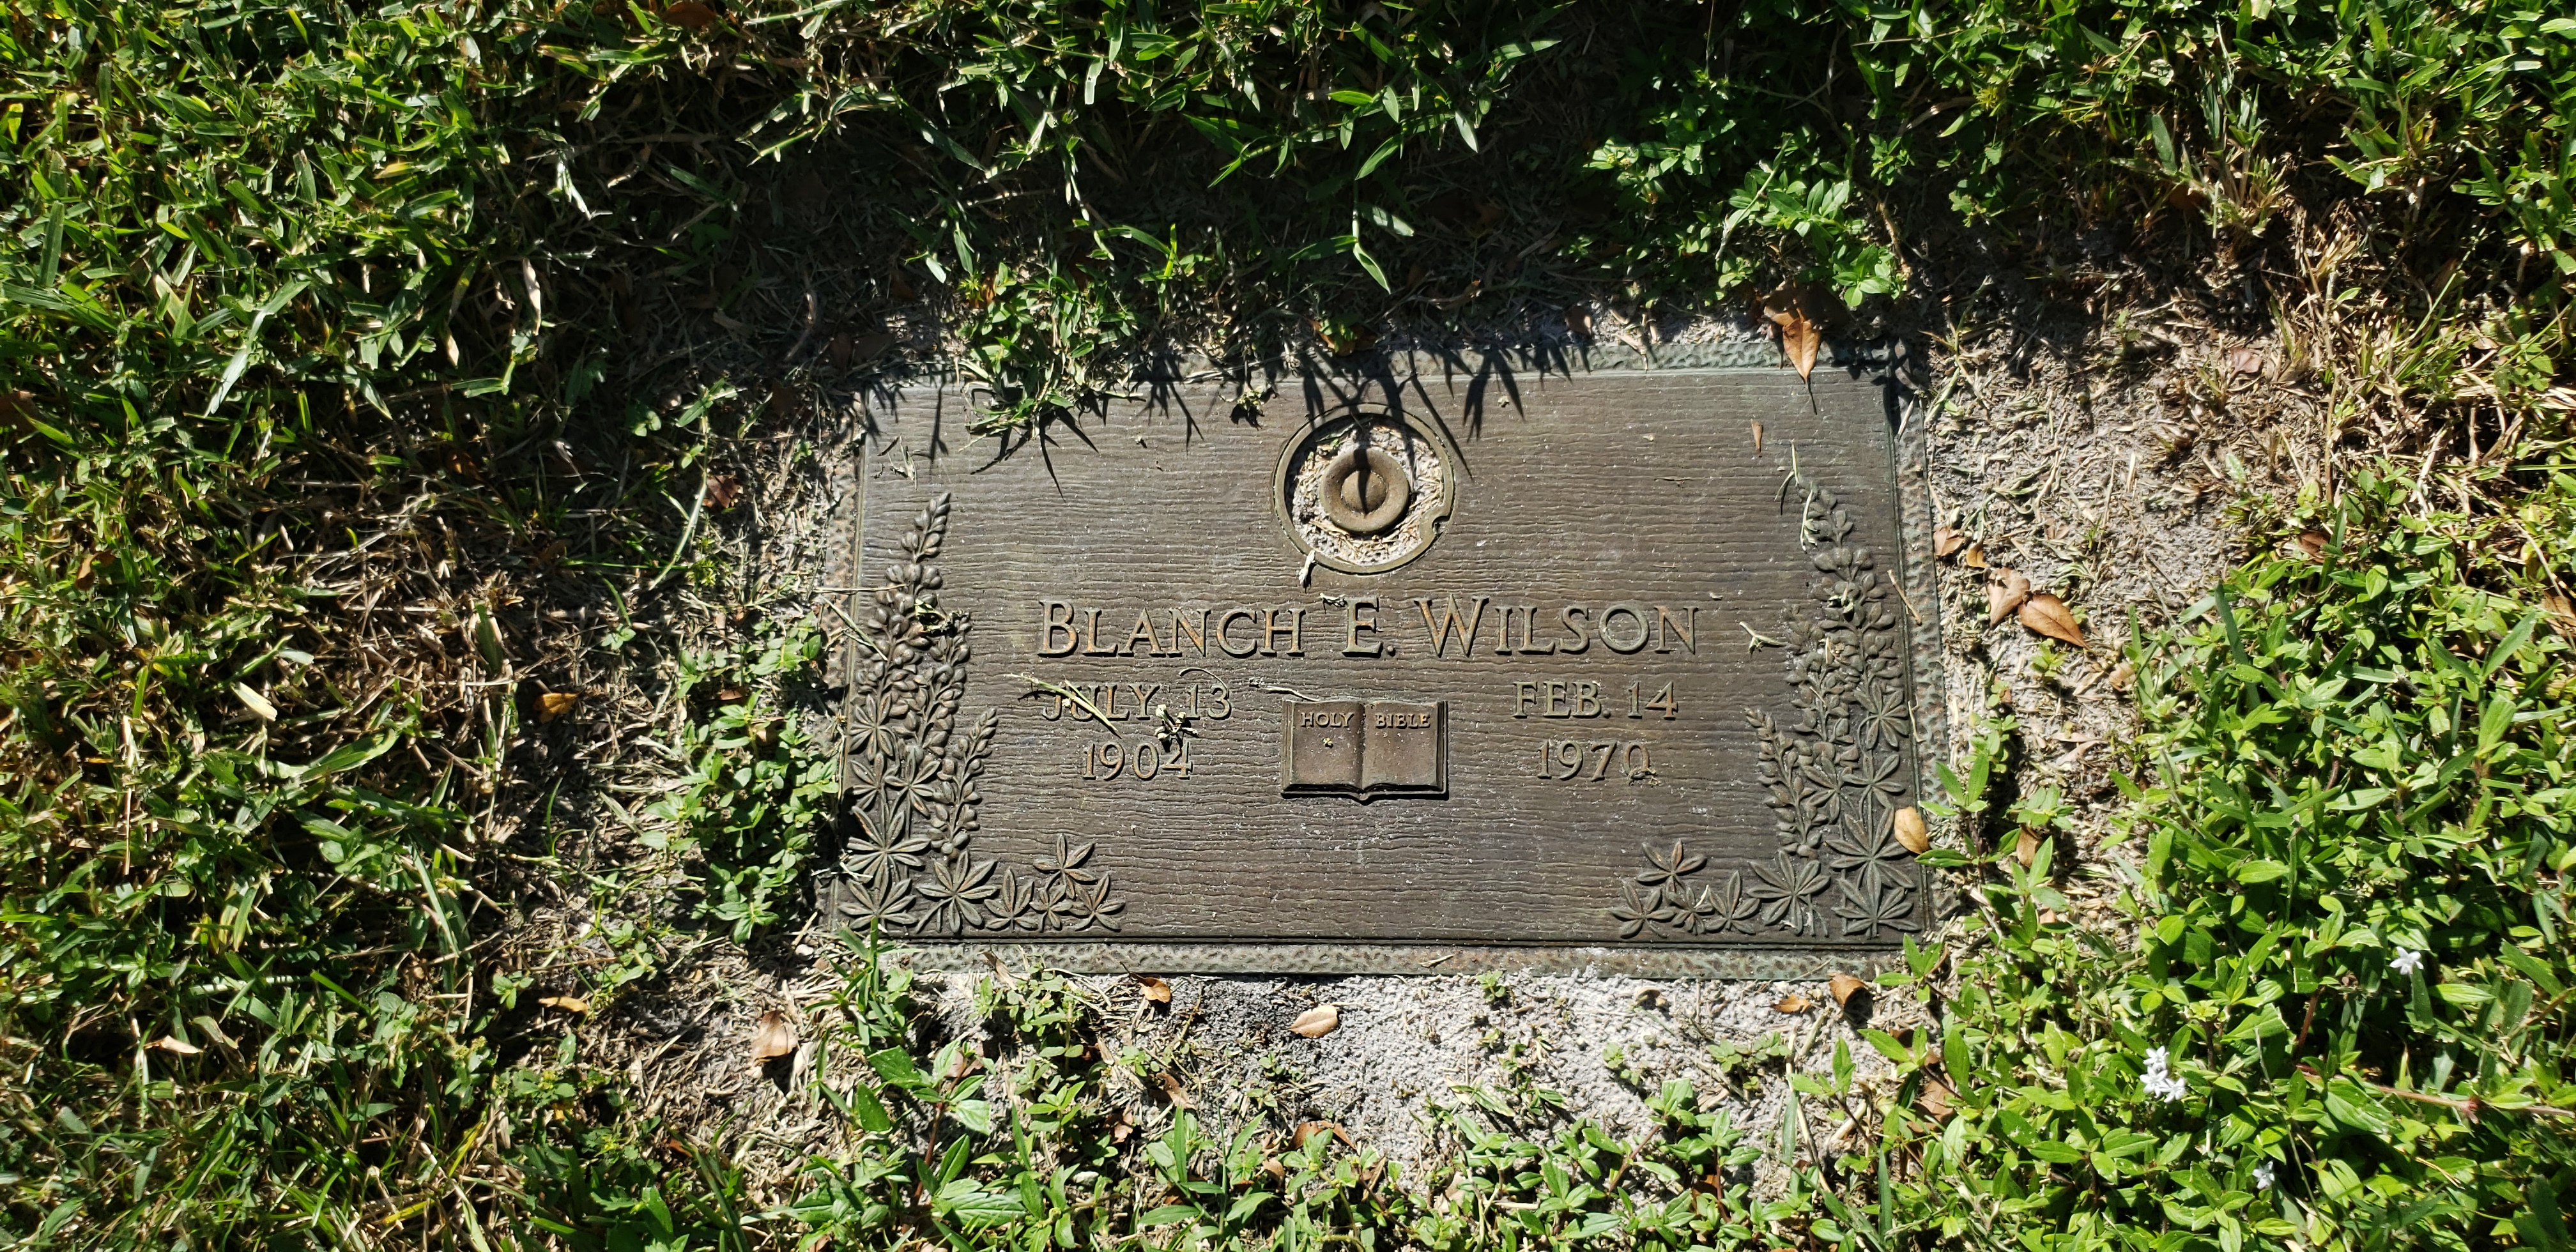 Blanch E Wilson